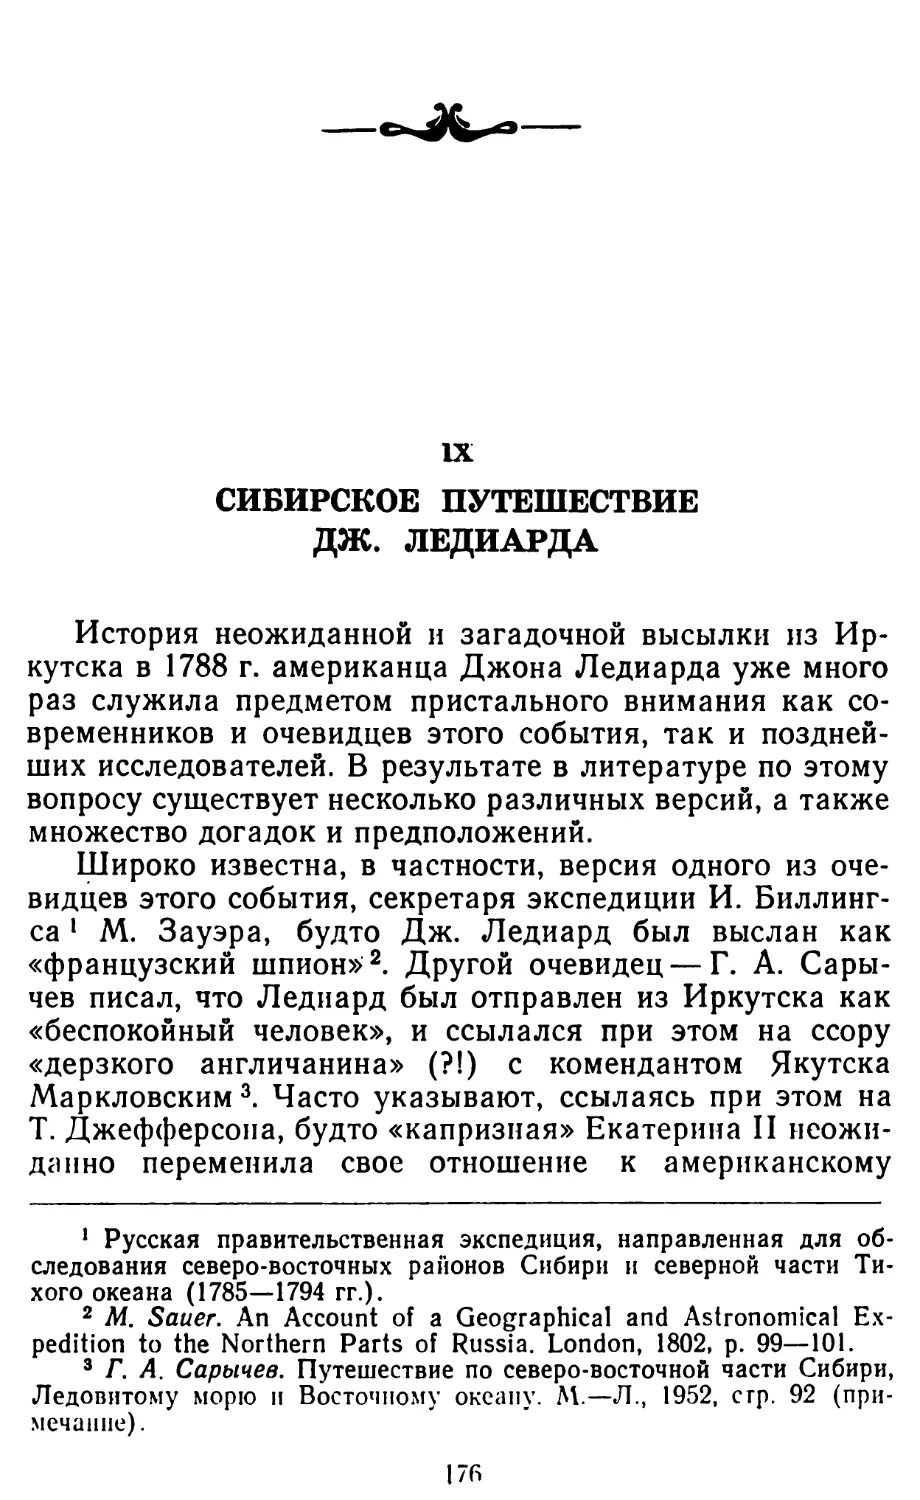 IX Сибирское путешествие Дж. Ледиарда